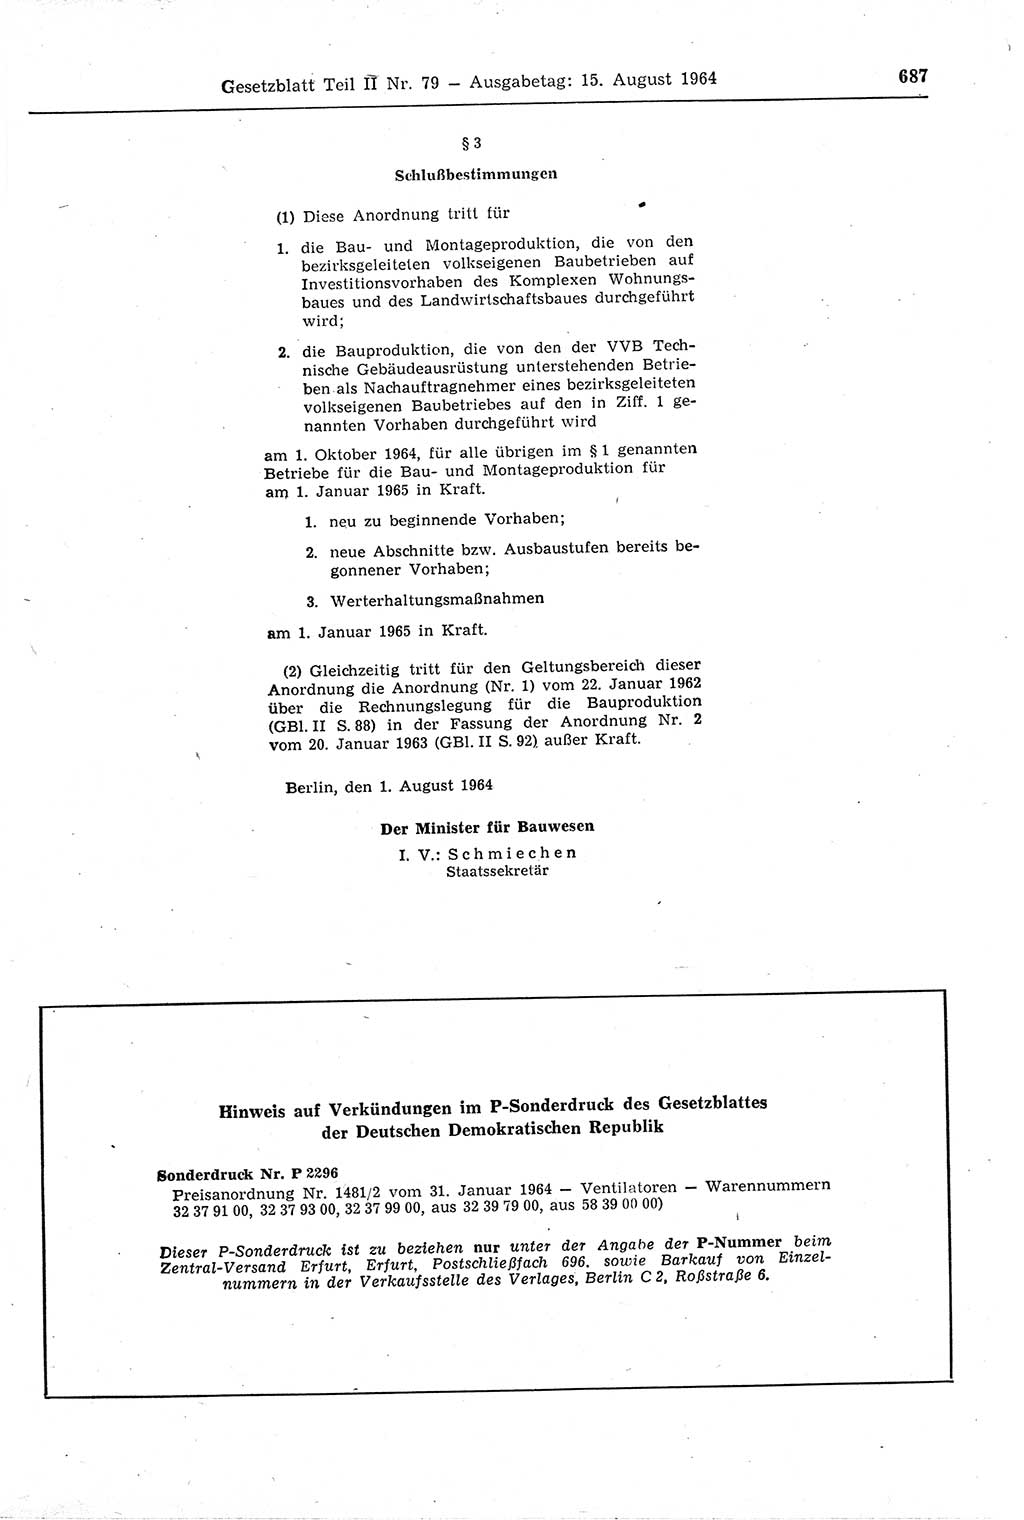 Gesetzblatt (GBl.) der Deutschen Demokratischen Republik (DDR) Teil ⅠⅠ 1964, Seite 687 (GBl. DDR ⅠⅠ 1964, S. 687)